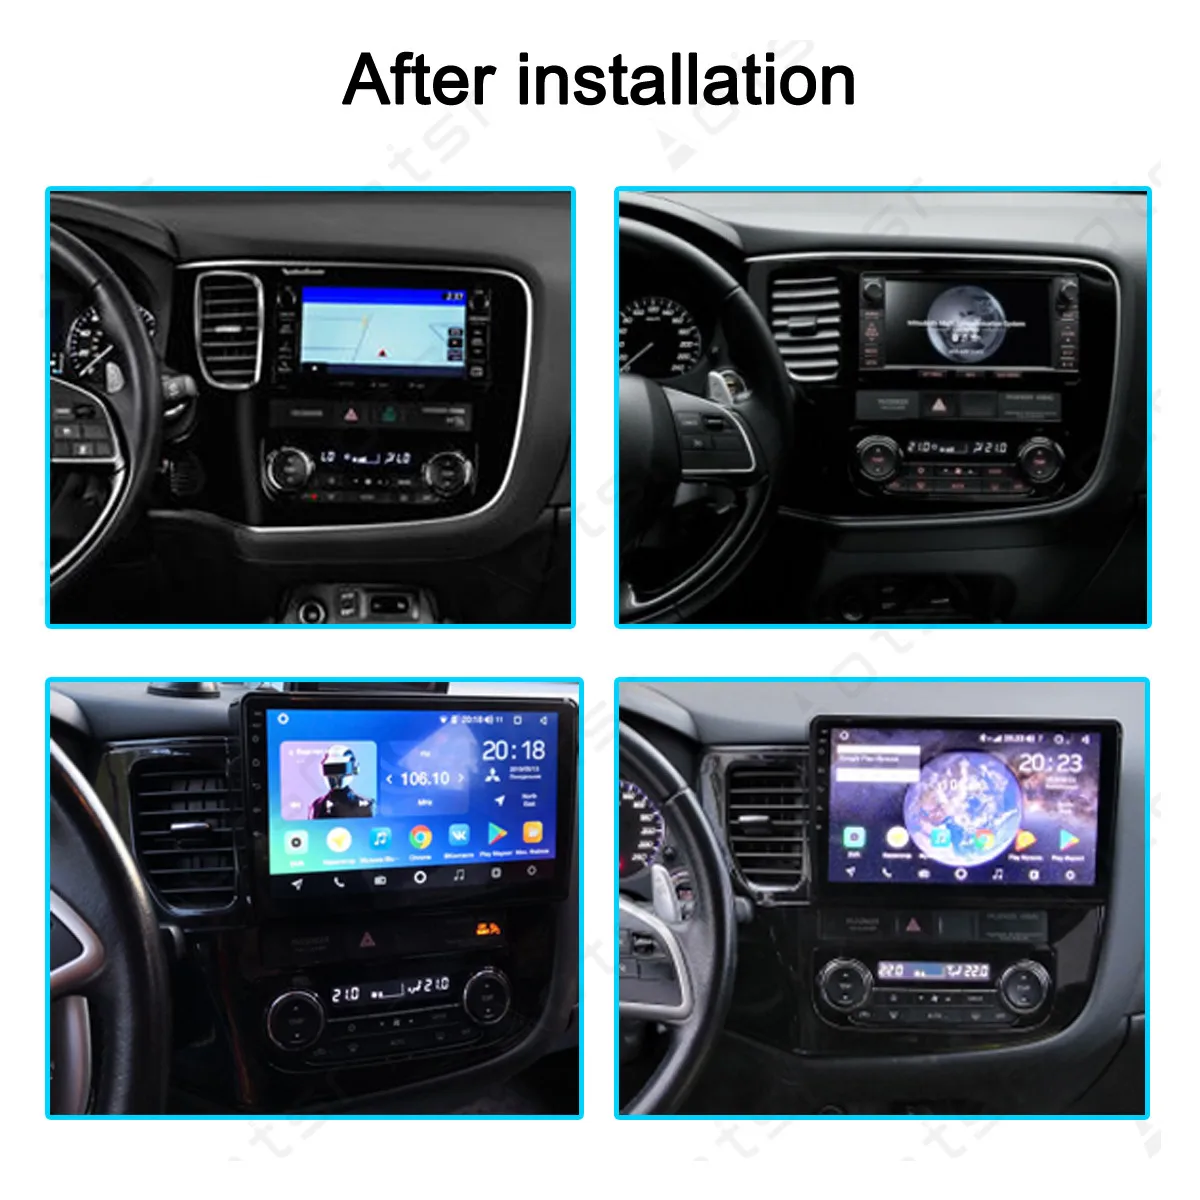 Aotsr 10,2 дюймов Android 9,1 2 Din Автомобильный мультимедийный плеер gps навигация для Mitsubishi Outlander- радио встроенный DSP